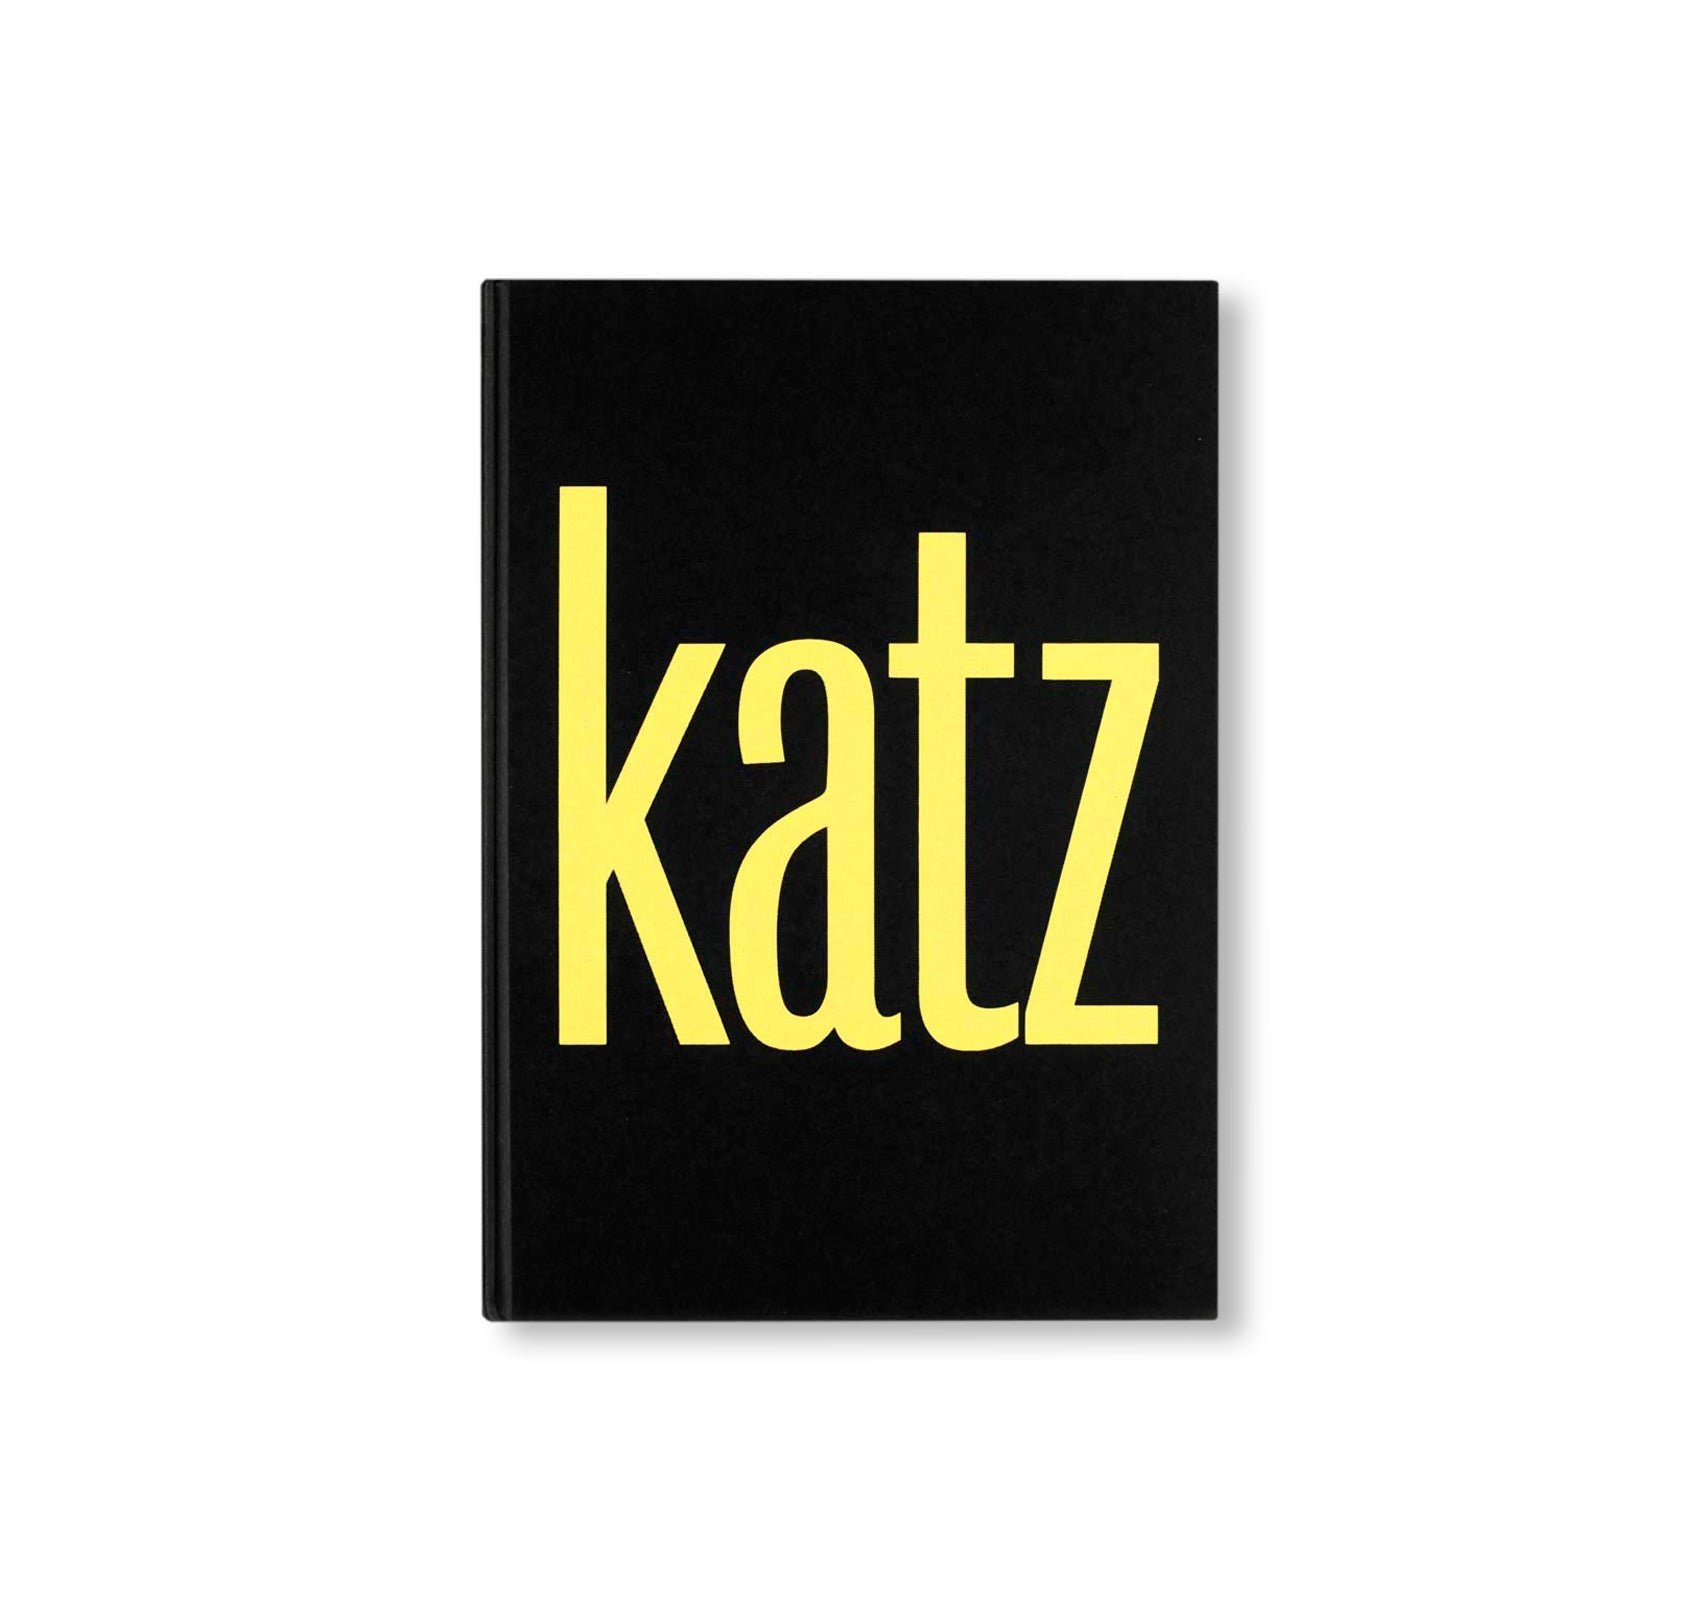 KATZ by Alex Katz, Vincent Katz – twelvebooks